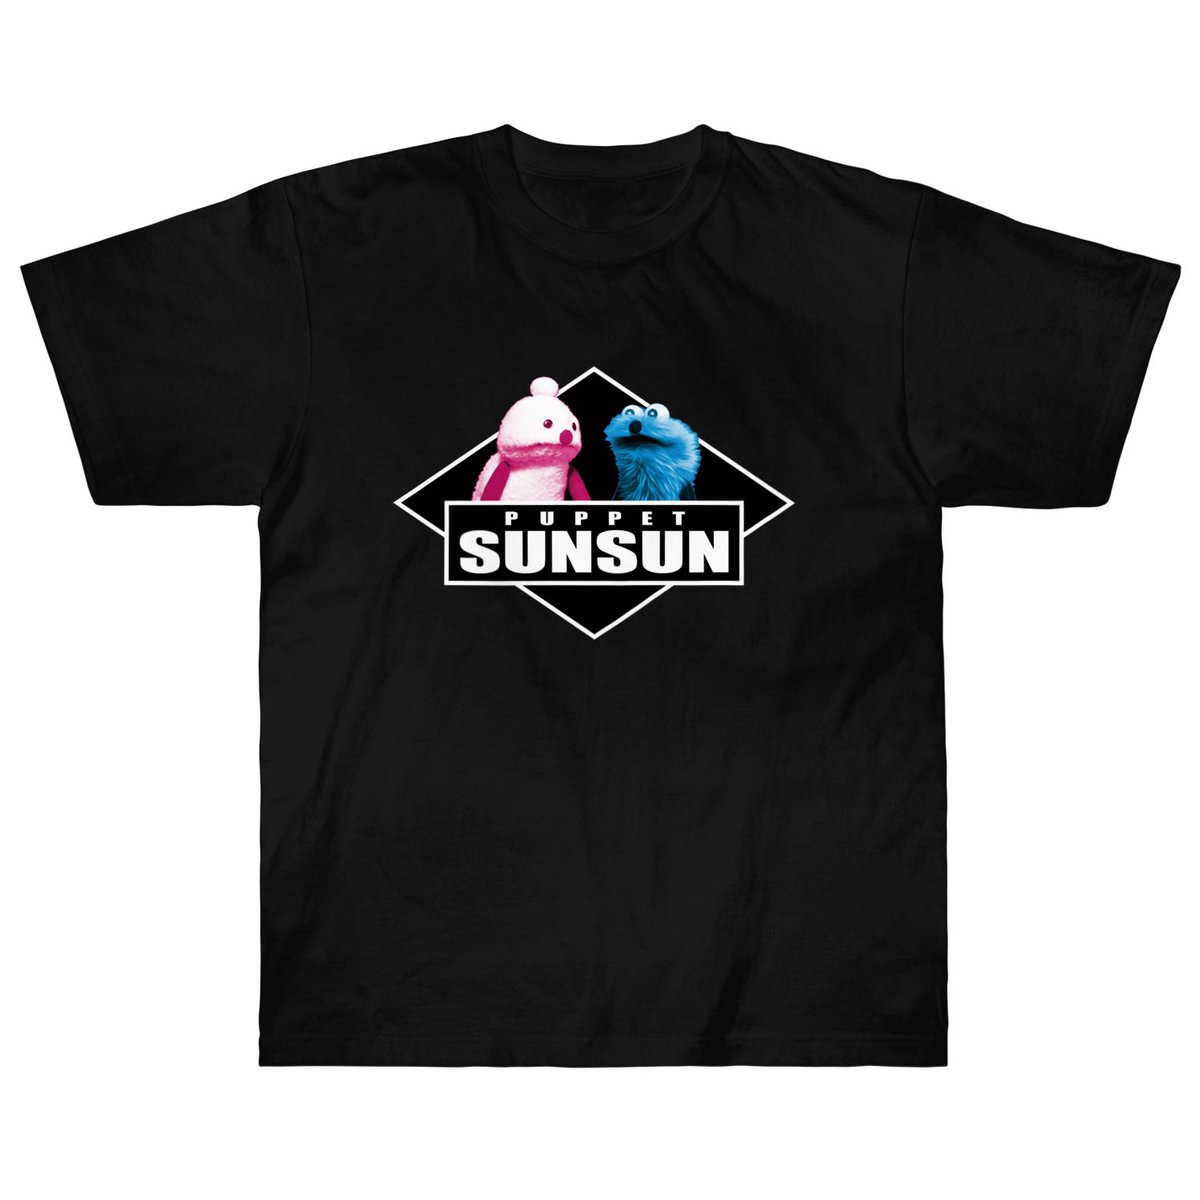 「SUZURIさんでTシャツセールがはじまりましたっ!6/11(日)23:59まで」|パペットスンスンのイラスト